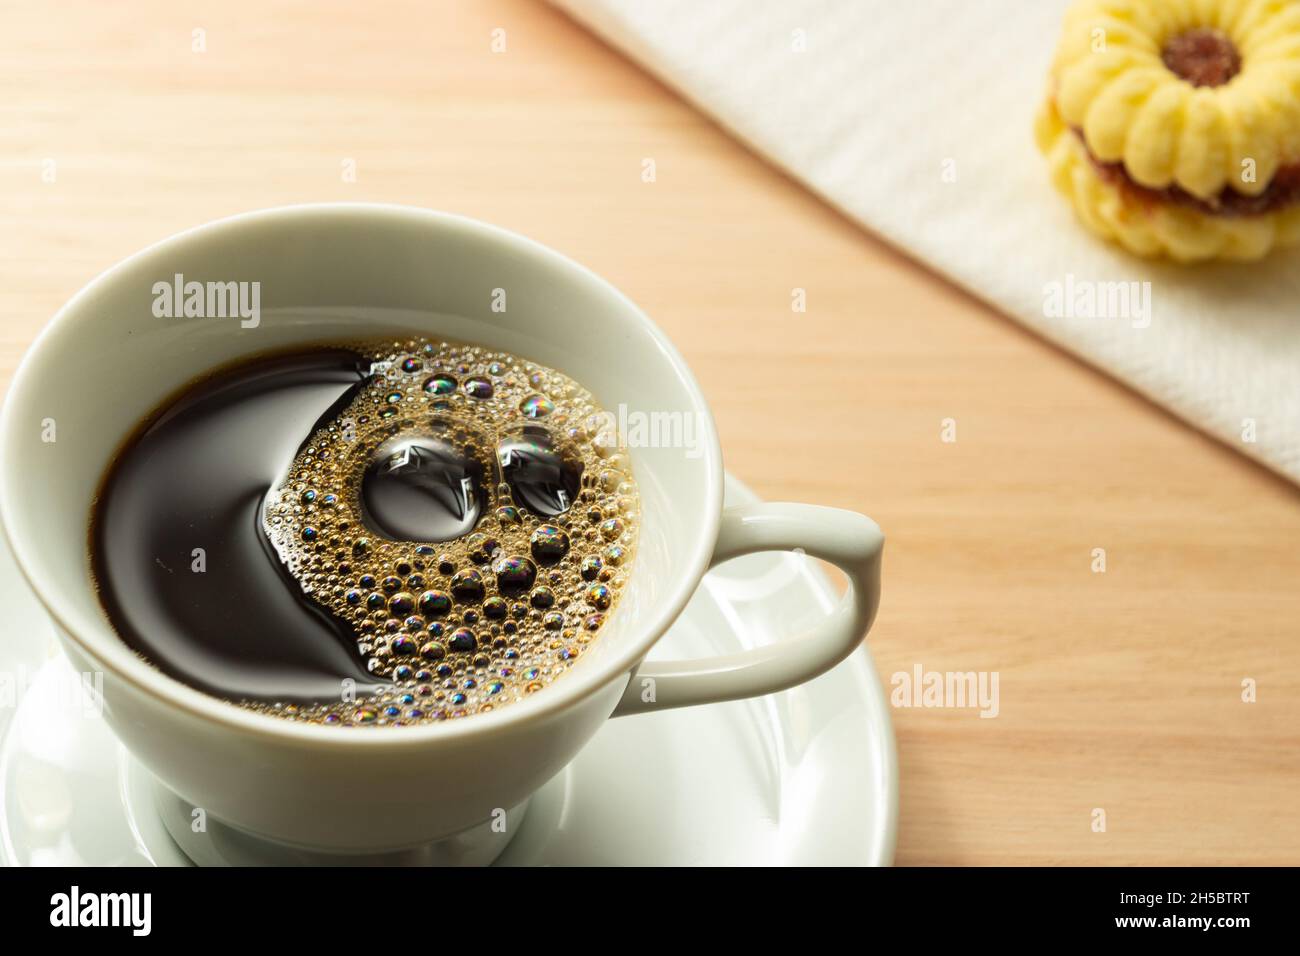 Une tasse blanche avec du café et un biscuit sur le bord de la soucoupe sur une surface en bois. Banque D'Images